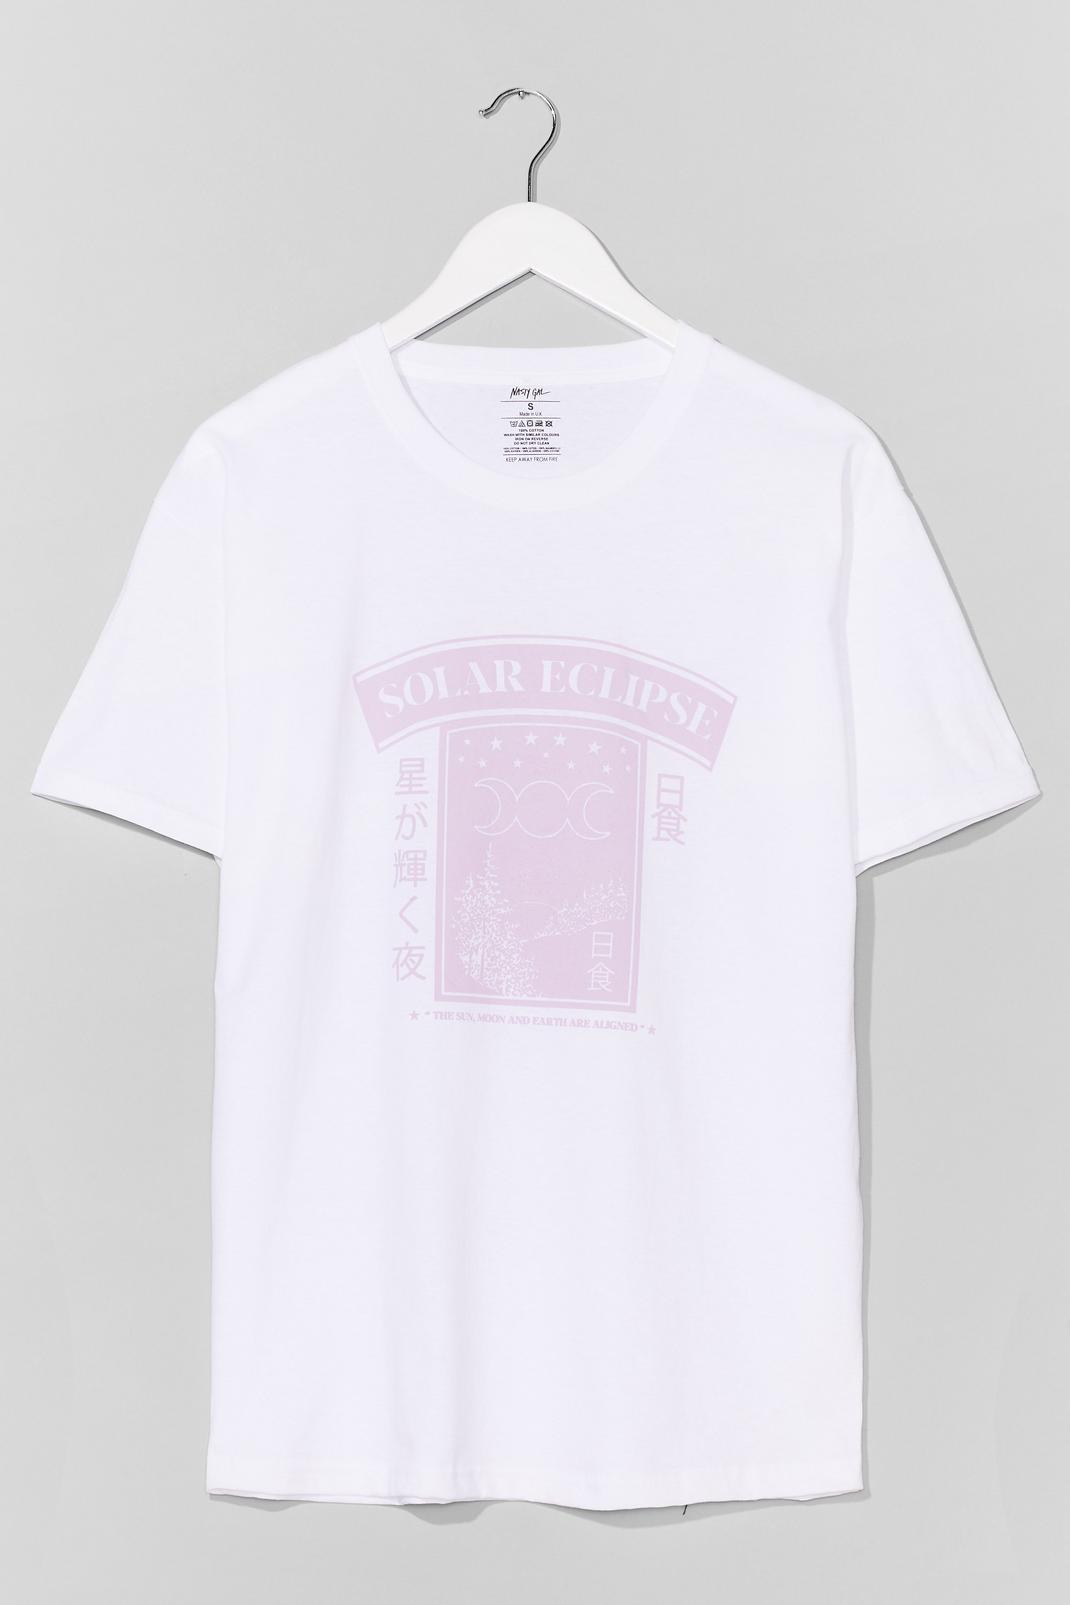 T-shirt ample à impressions et slogan Solar Eclipse, White image number 1